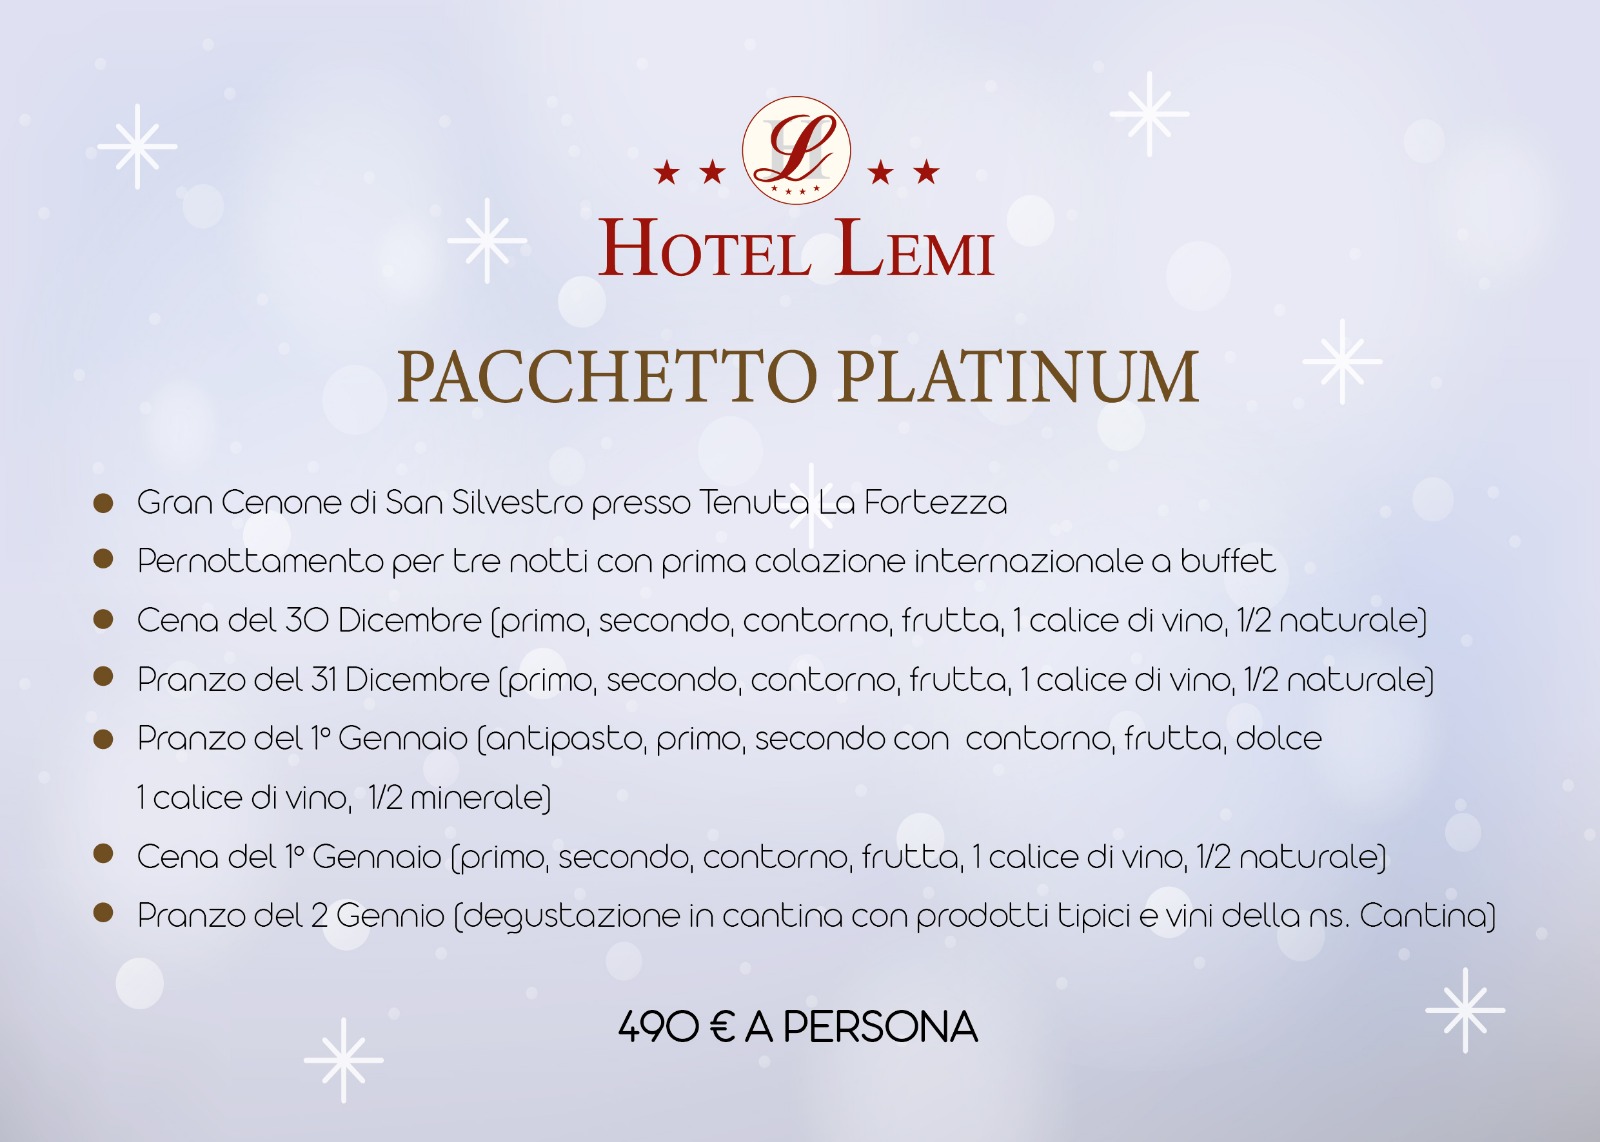 Pacchetto Platinum